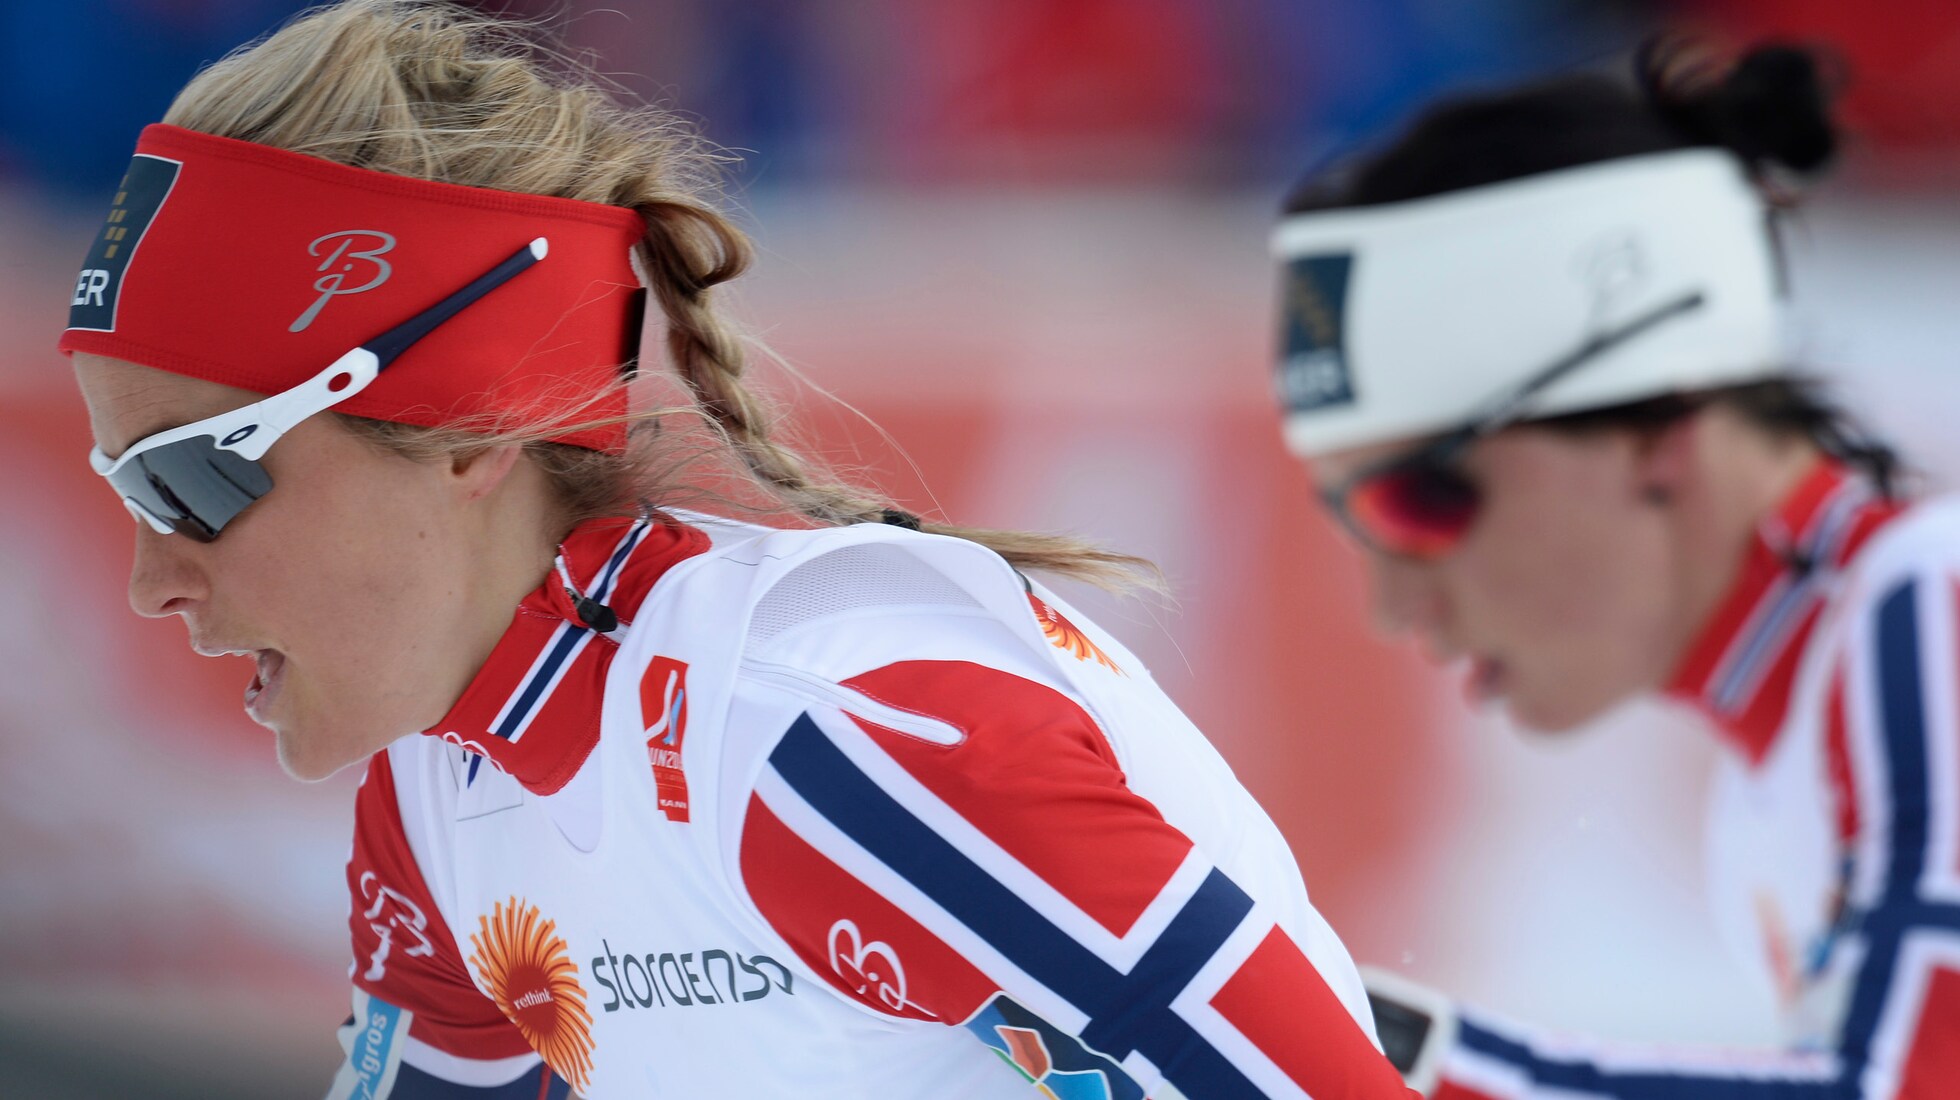 Sjekk - den norske VM-skidressen er gjennomsiktig - VG